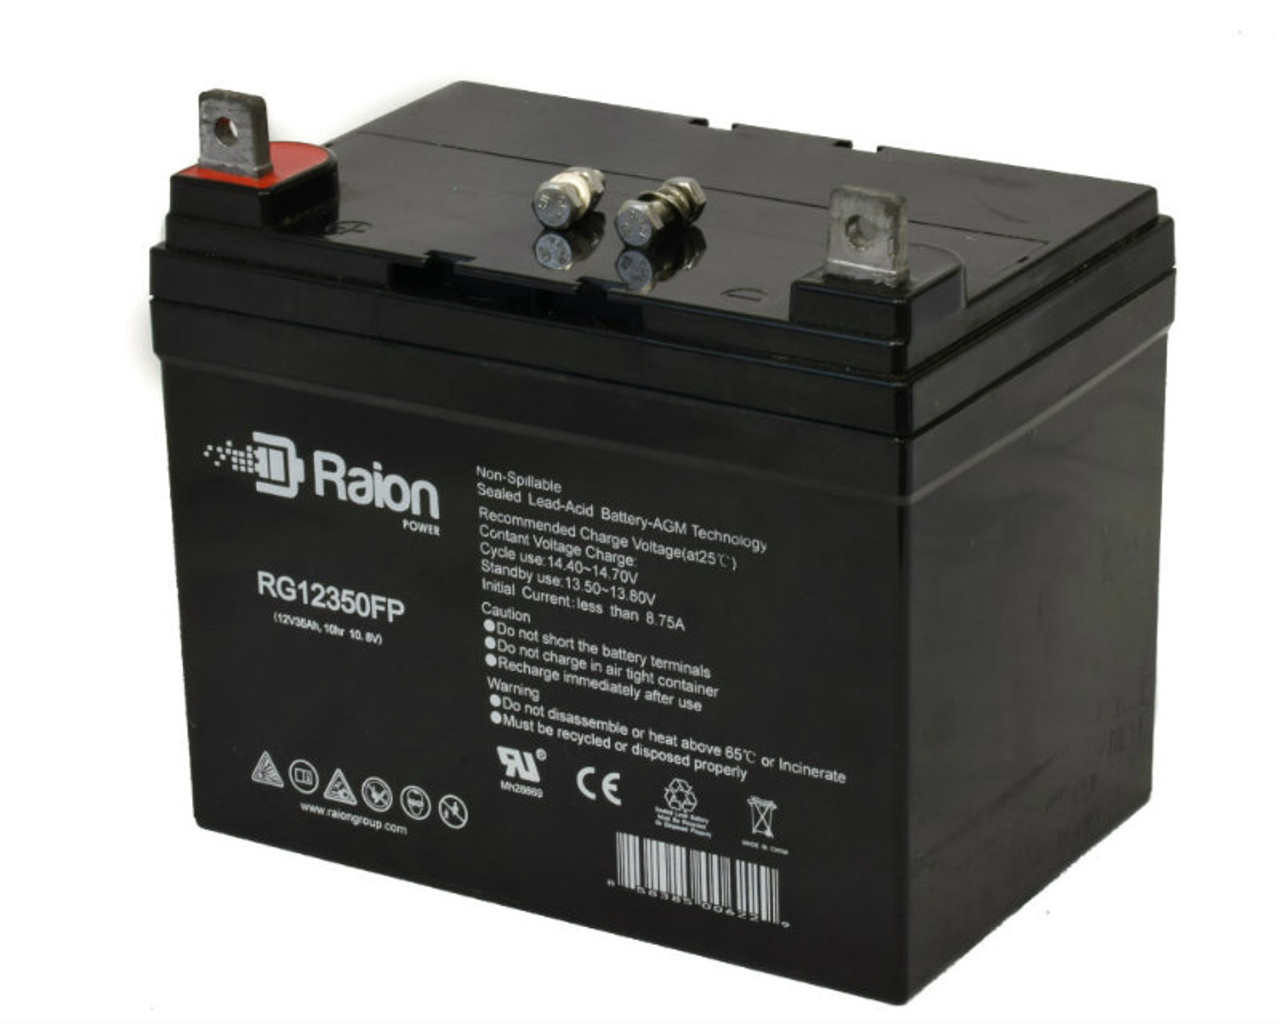 Raion Power Replacement 12V 35Ah RG12350FP Battery for Ingersoll Equipment 5818V